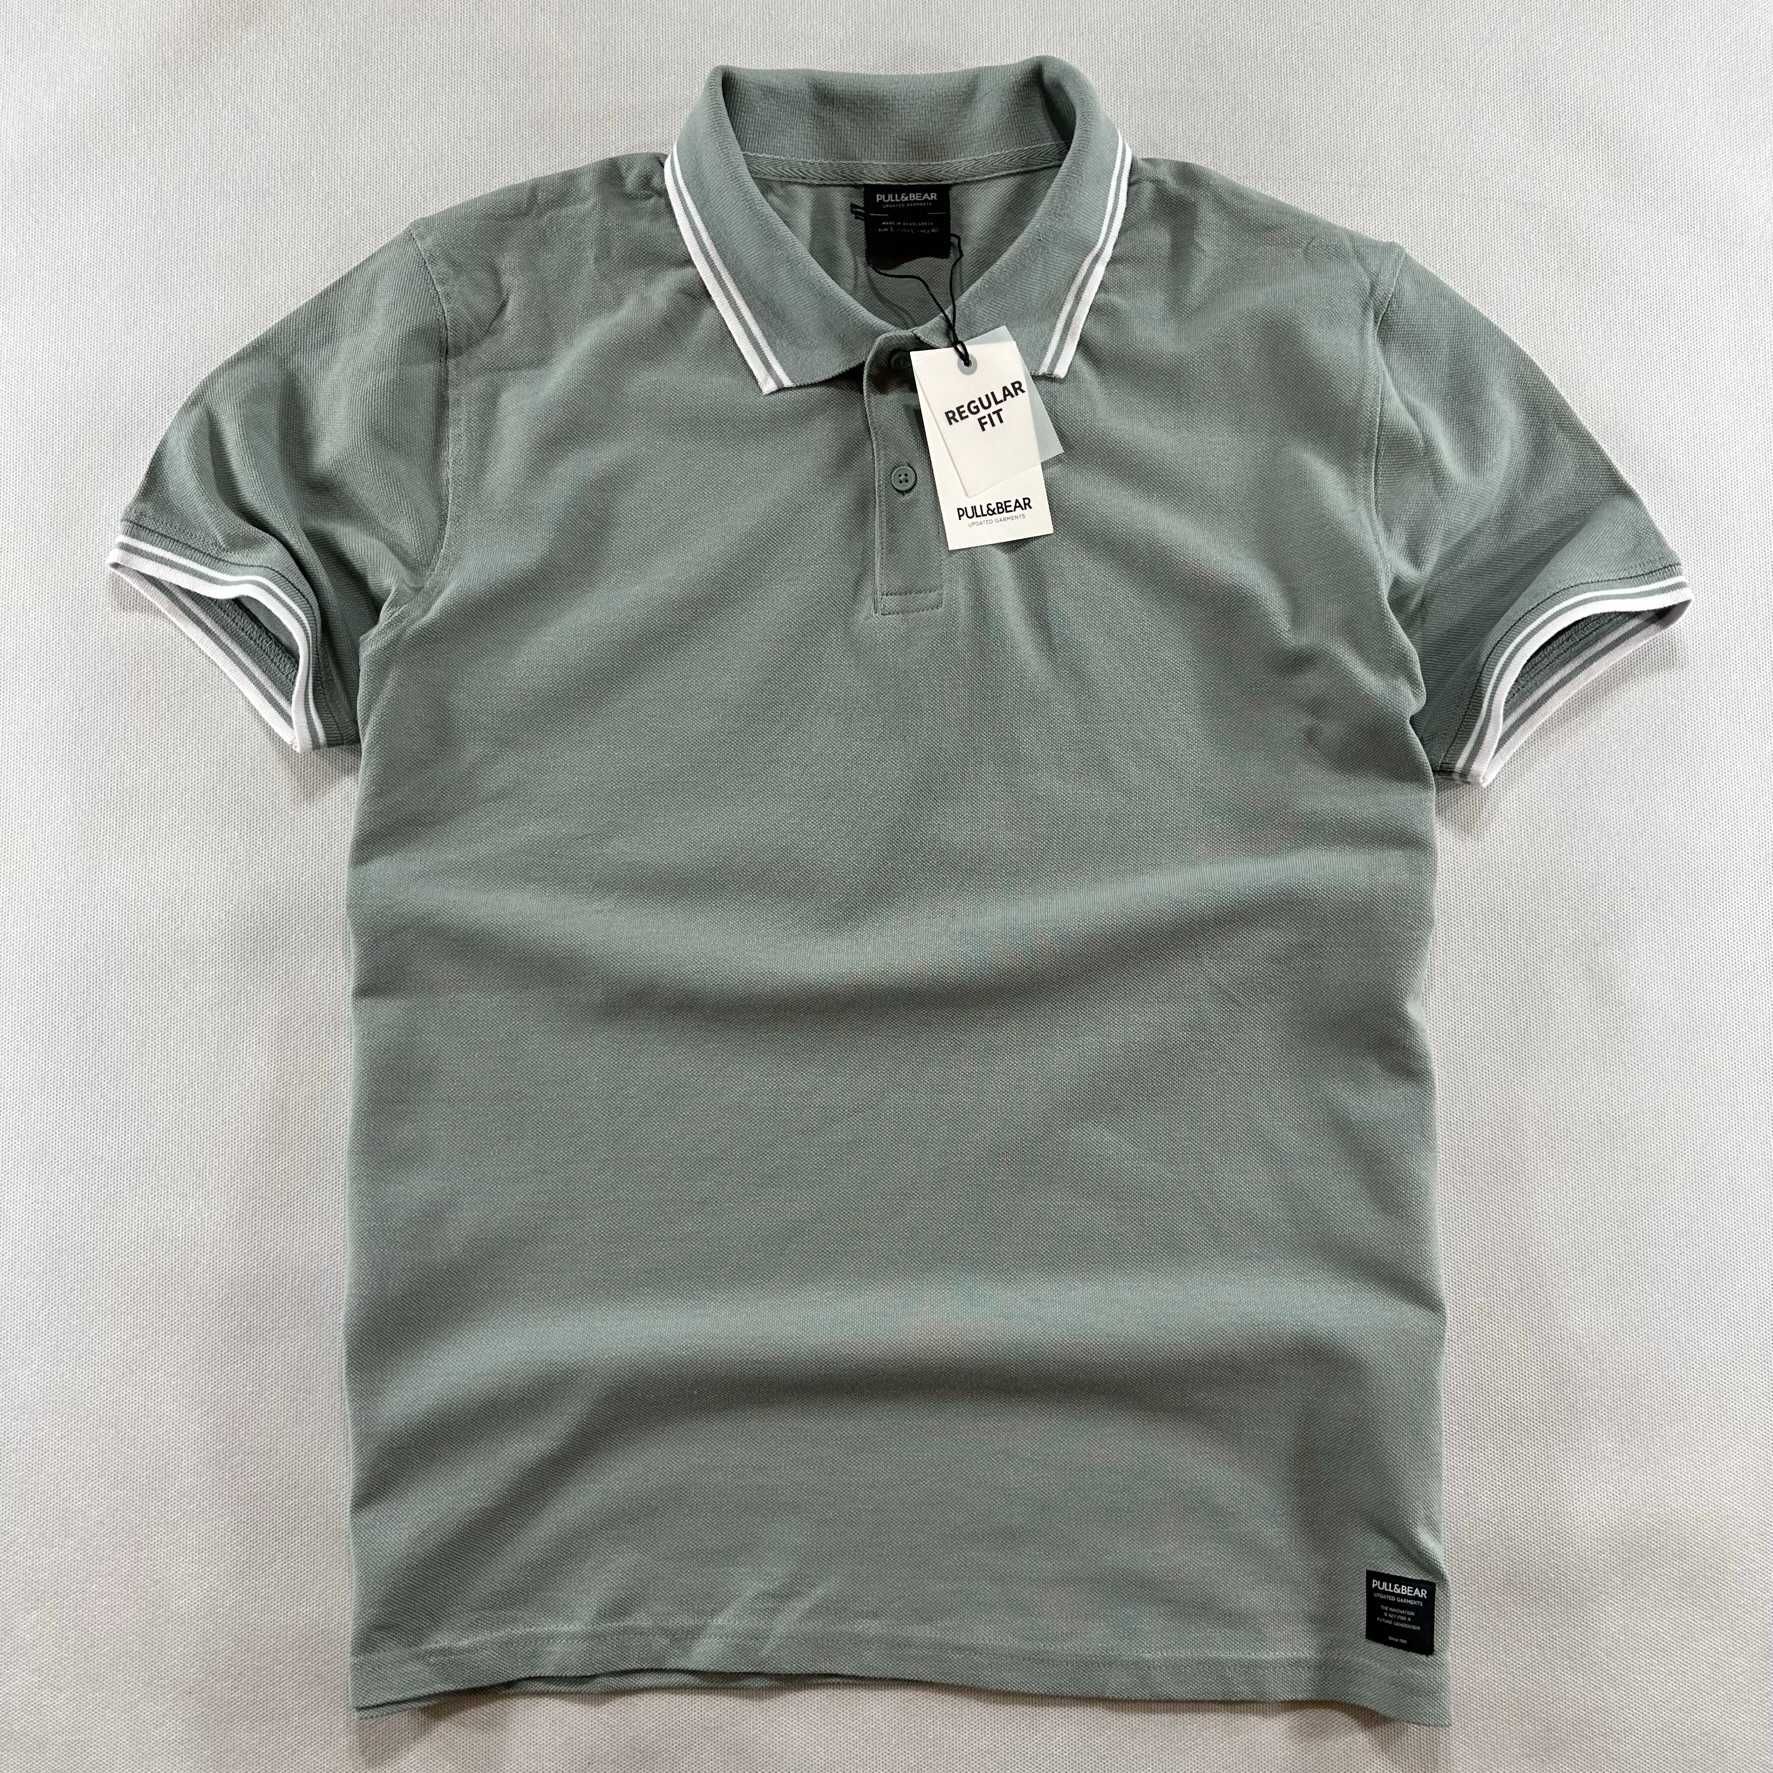 PULL & BEAR t-shirt polo zielony / szałwiowy regular fit M